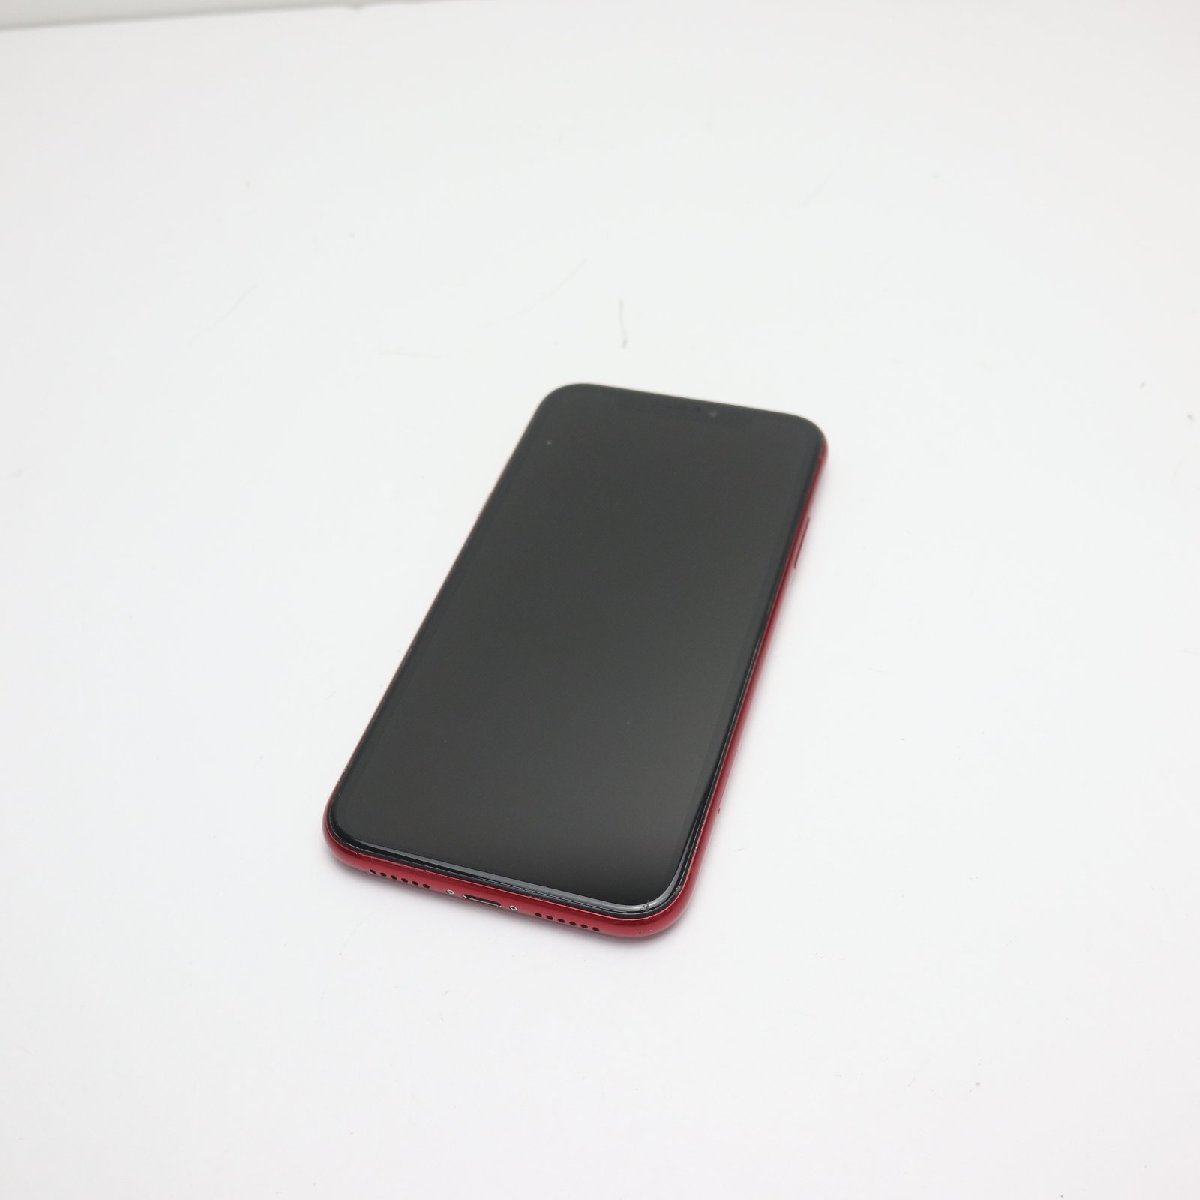 新素材新作 白ロム スマホ RED レッド 128GB iPhoneXR SIMフリー 美品